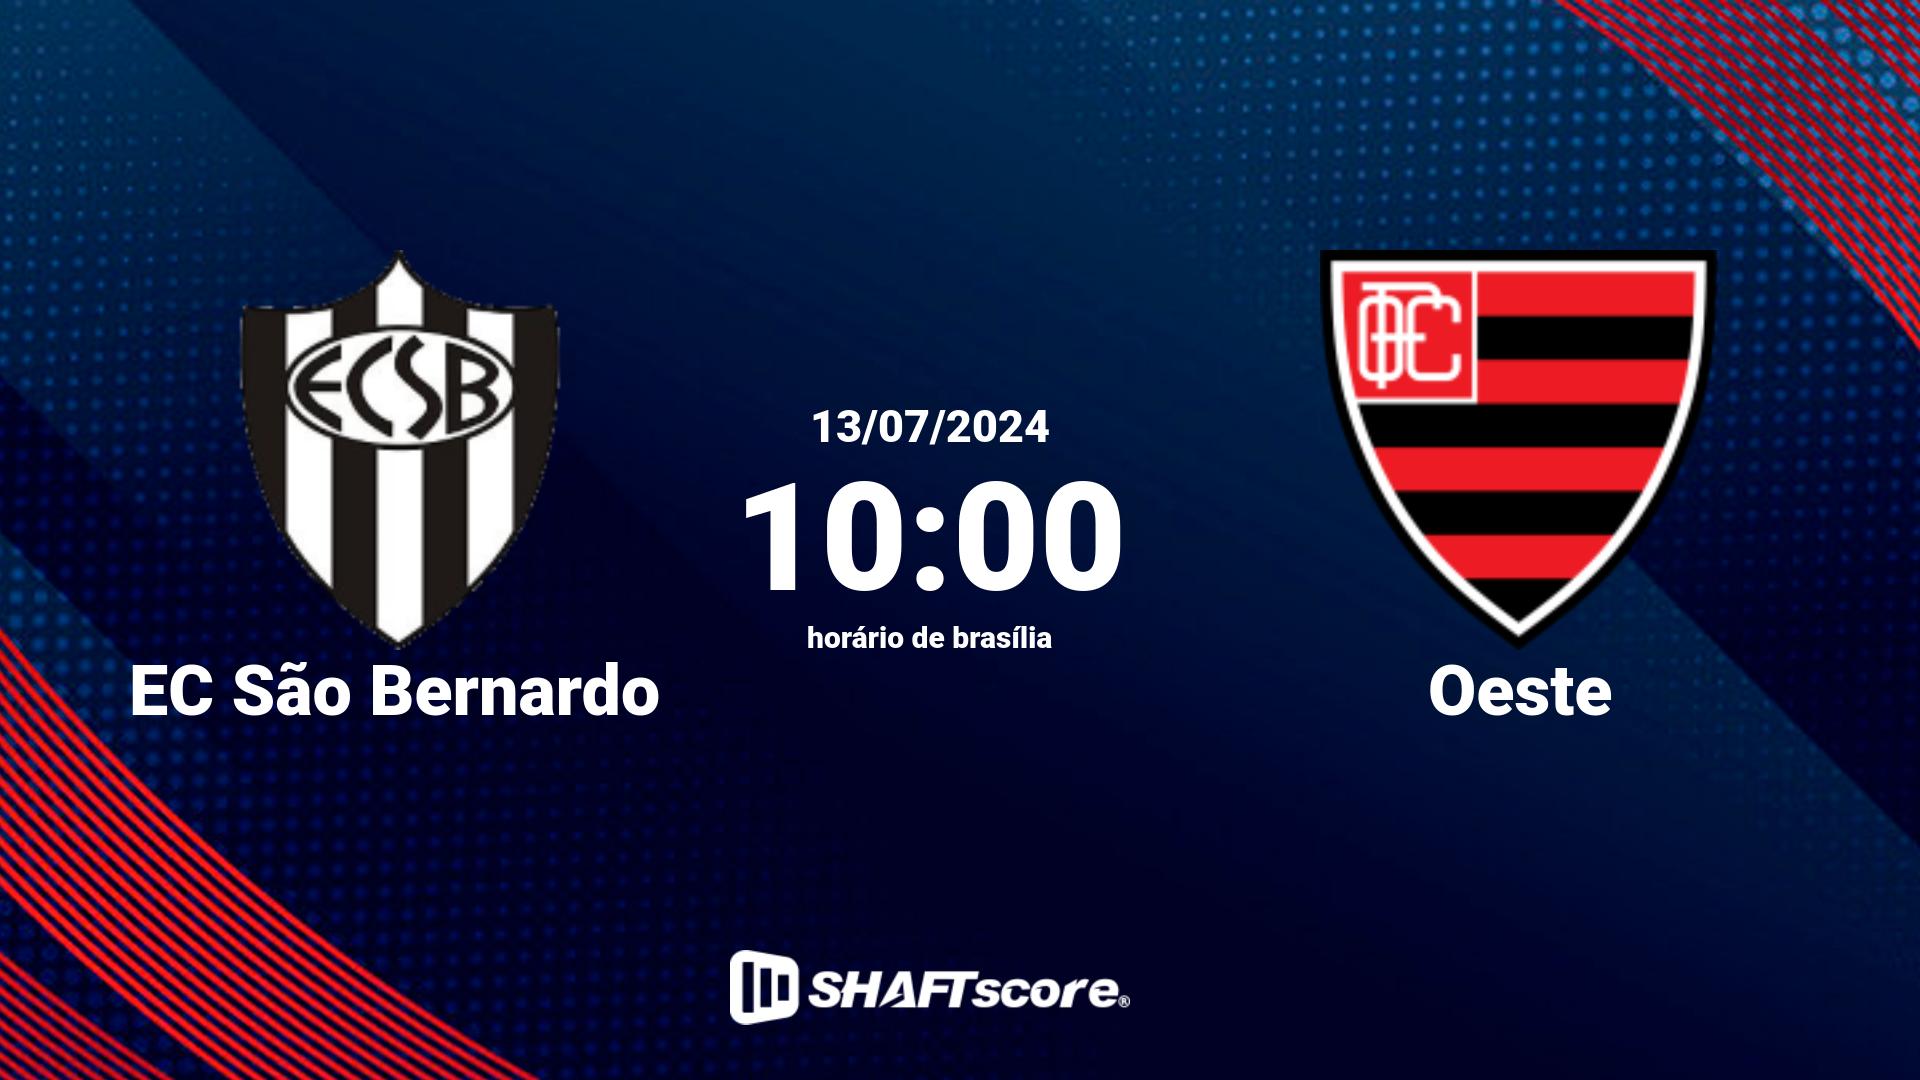 Estatísticas do jogo EC São Bernardo vs Oeste 13.07 10:00